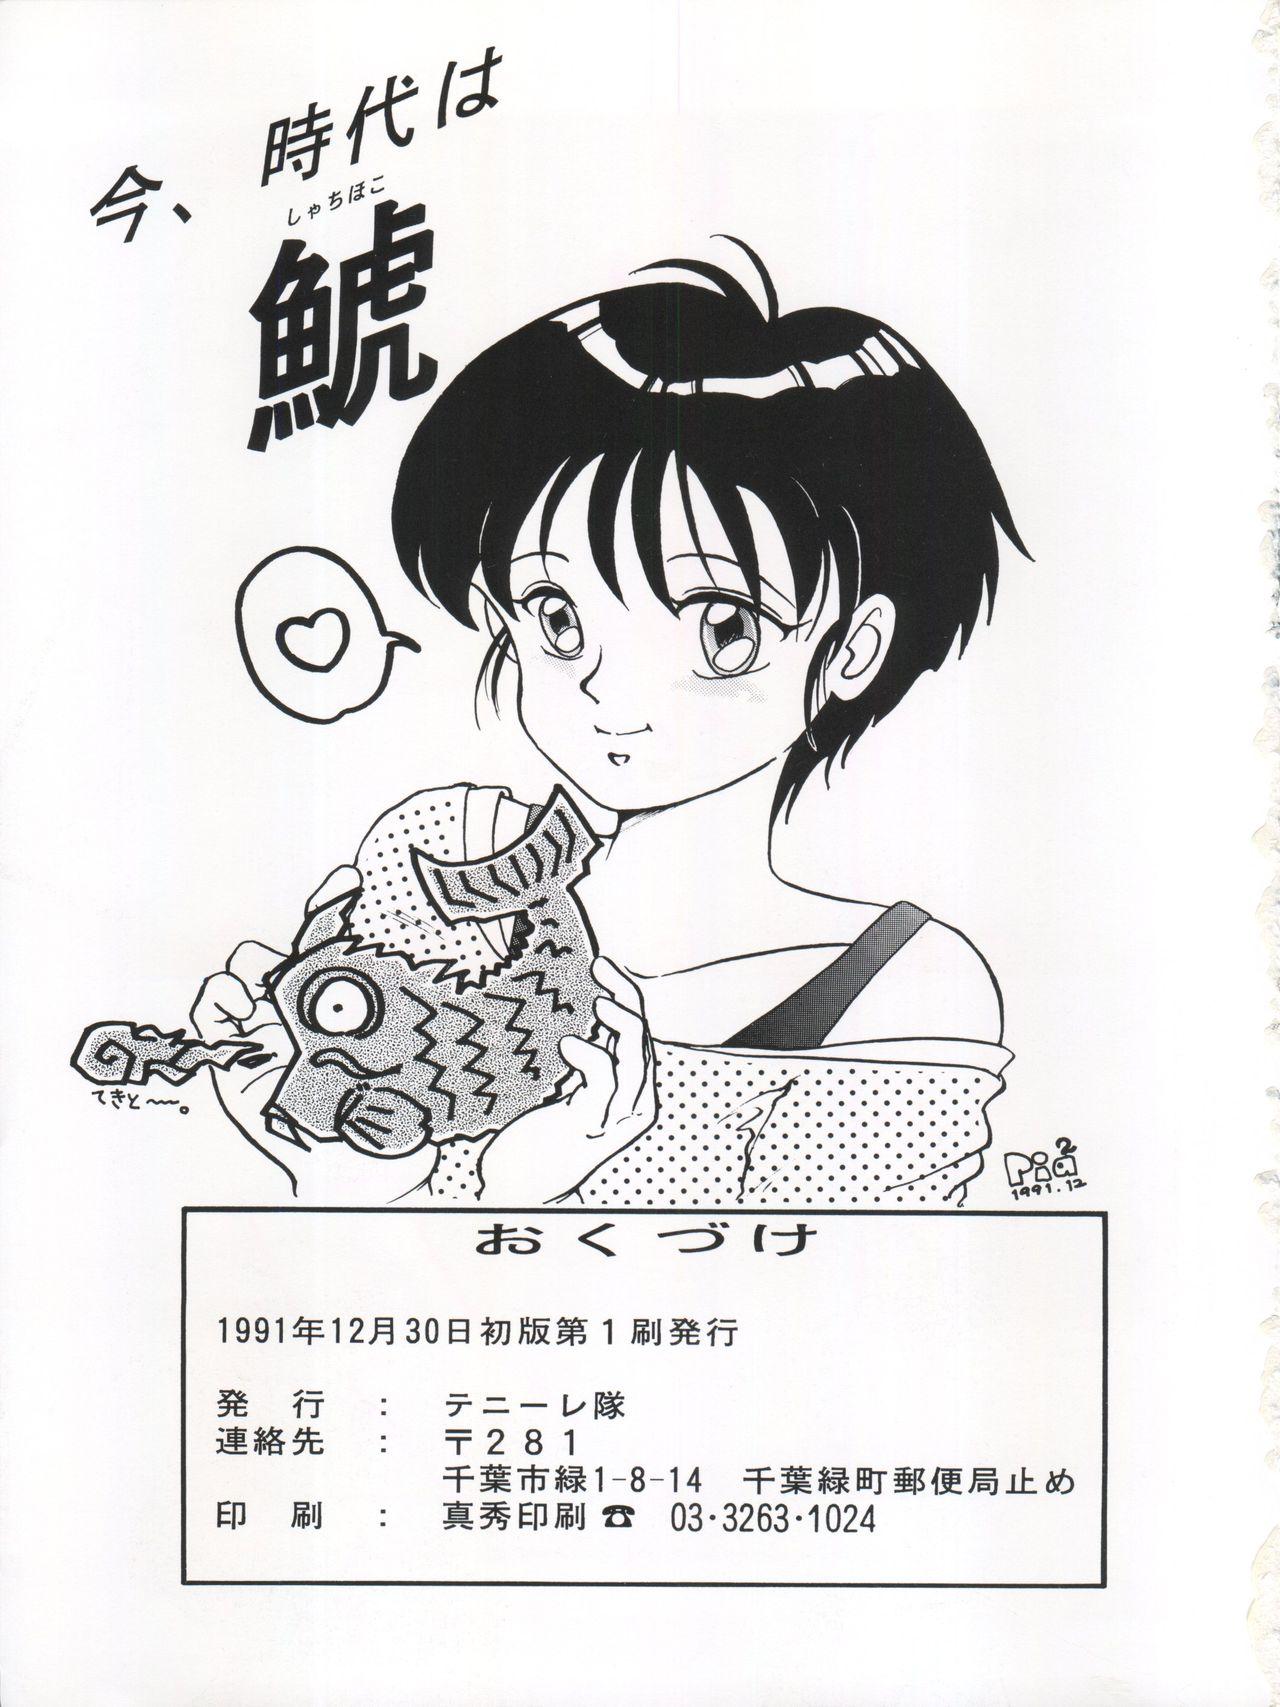 Amateur 逮捕されちゃうぞ - Fushigi no umi no nadia Youre under arrest Minky momo 3x3 eyes Celebrity Nudes - Page 47